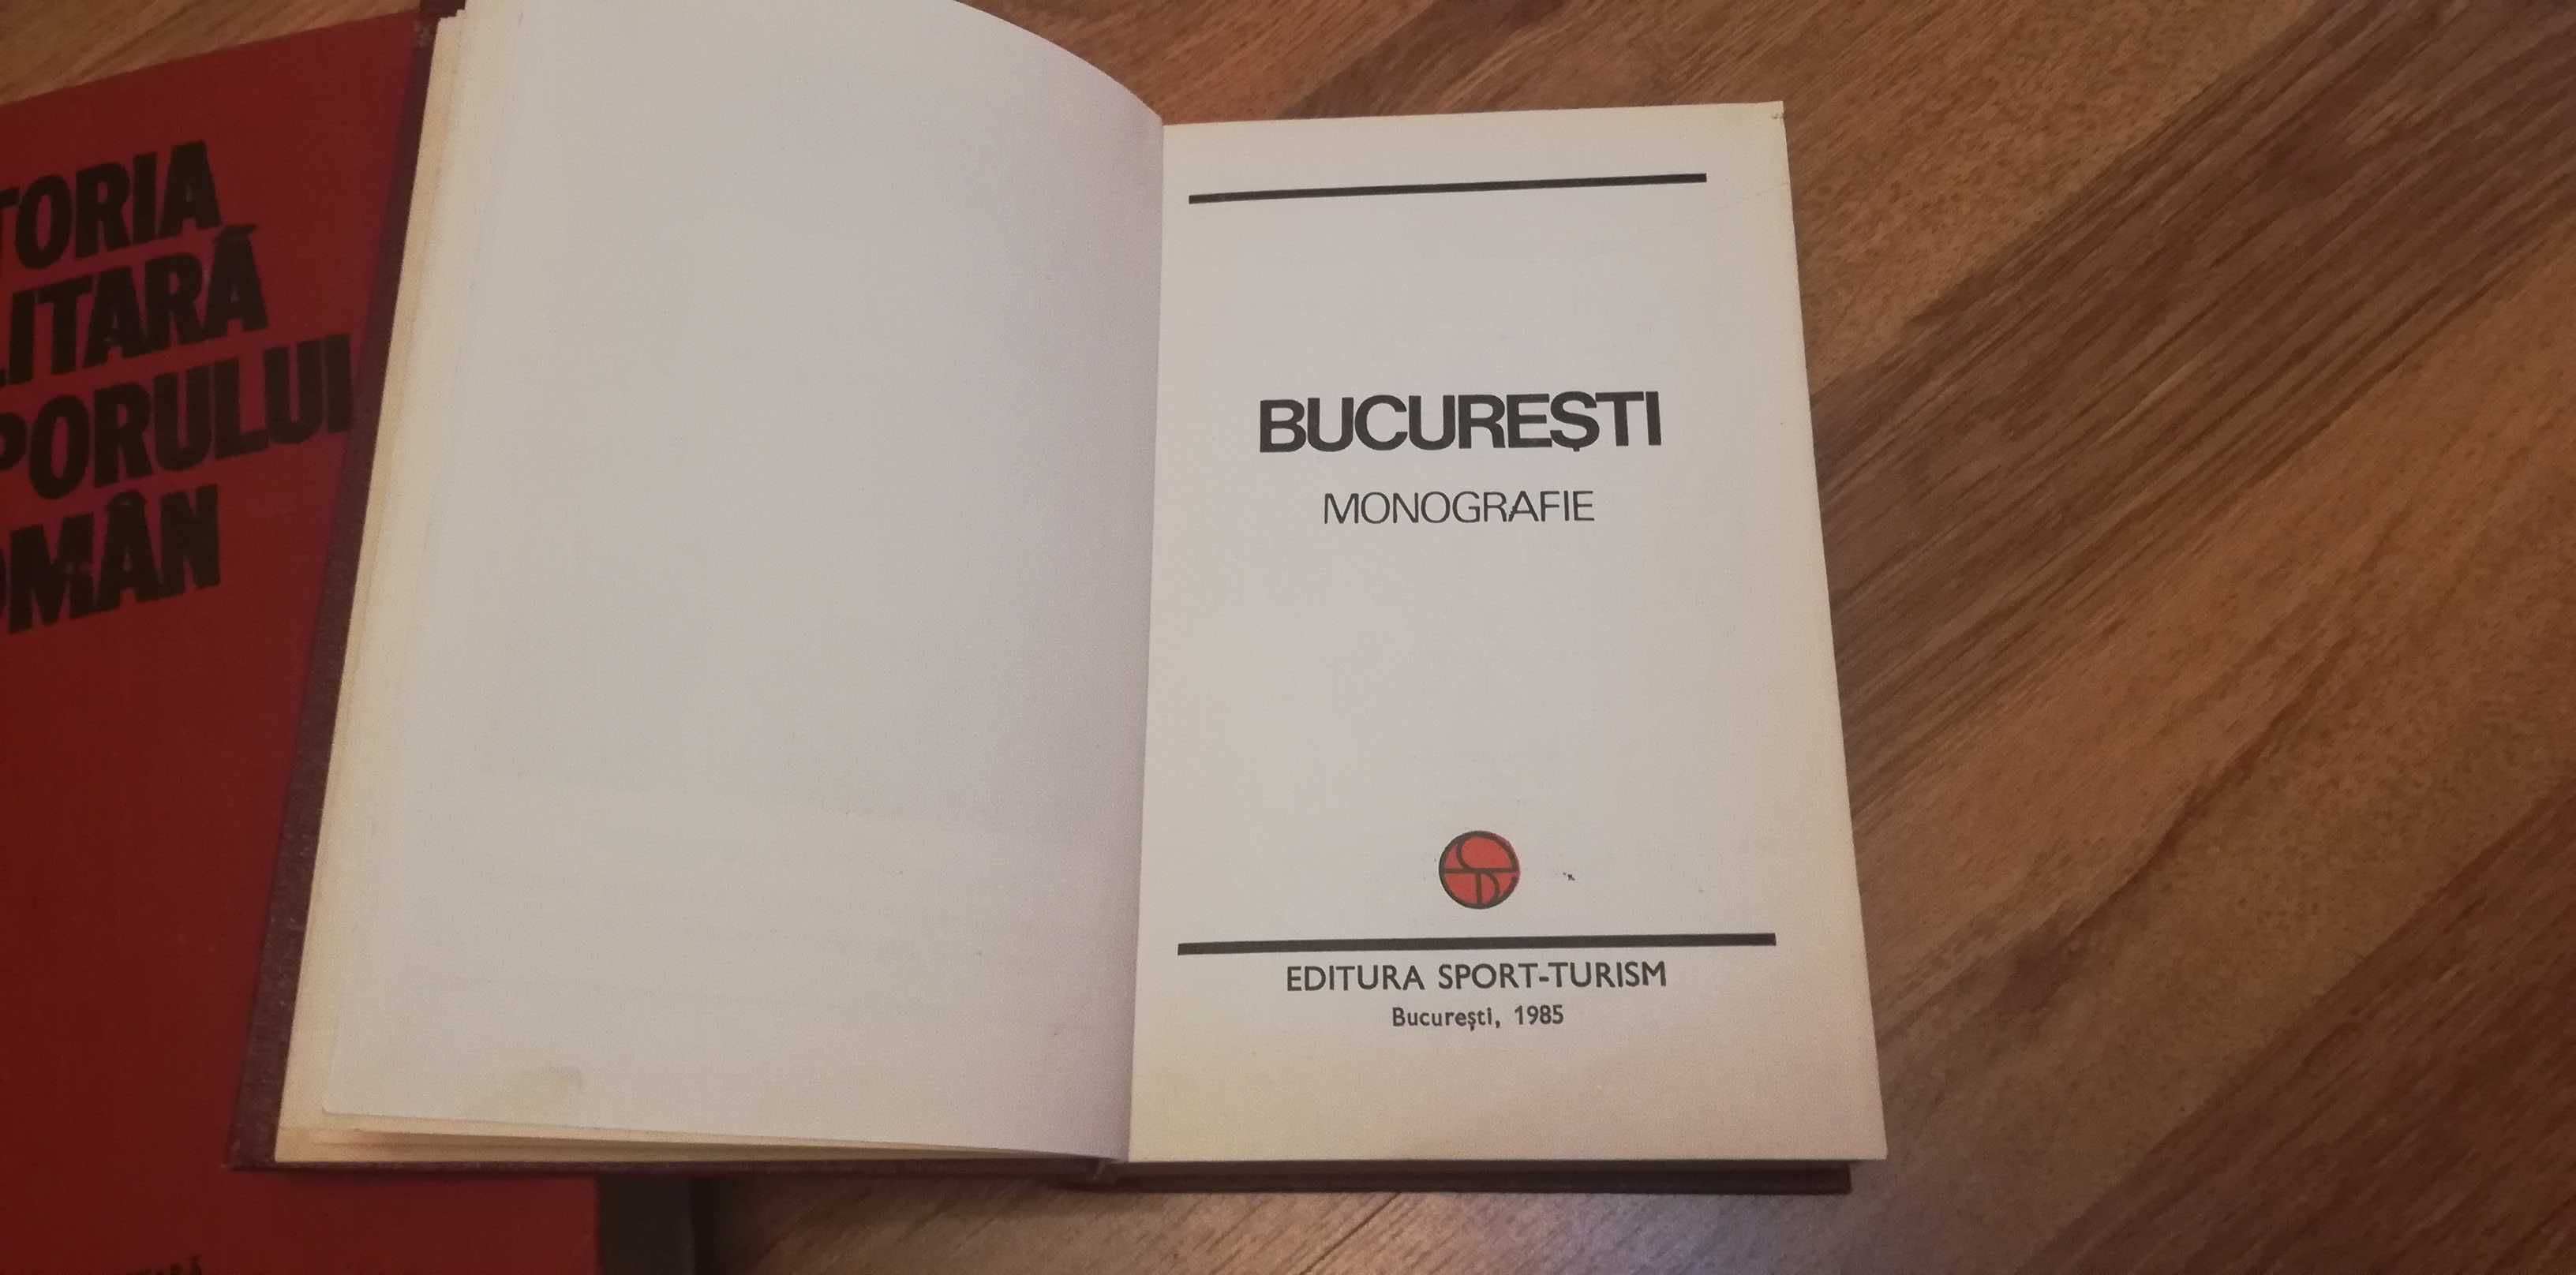 istoria militara a poporului roman si Bucuresti monografie 1985